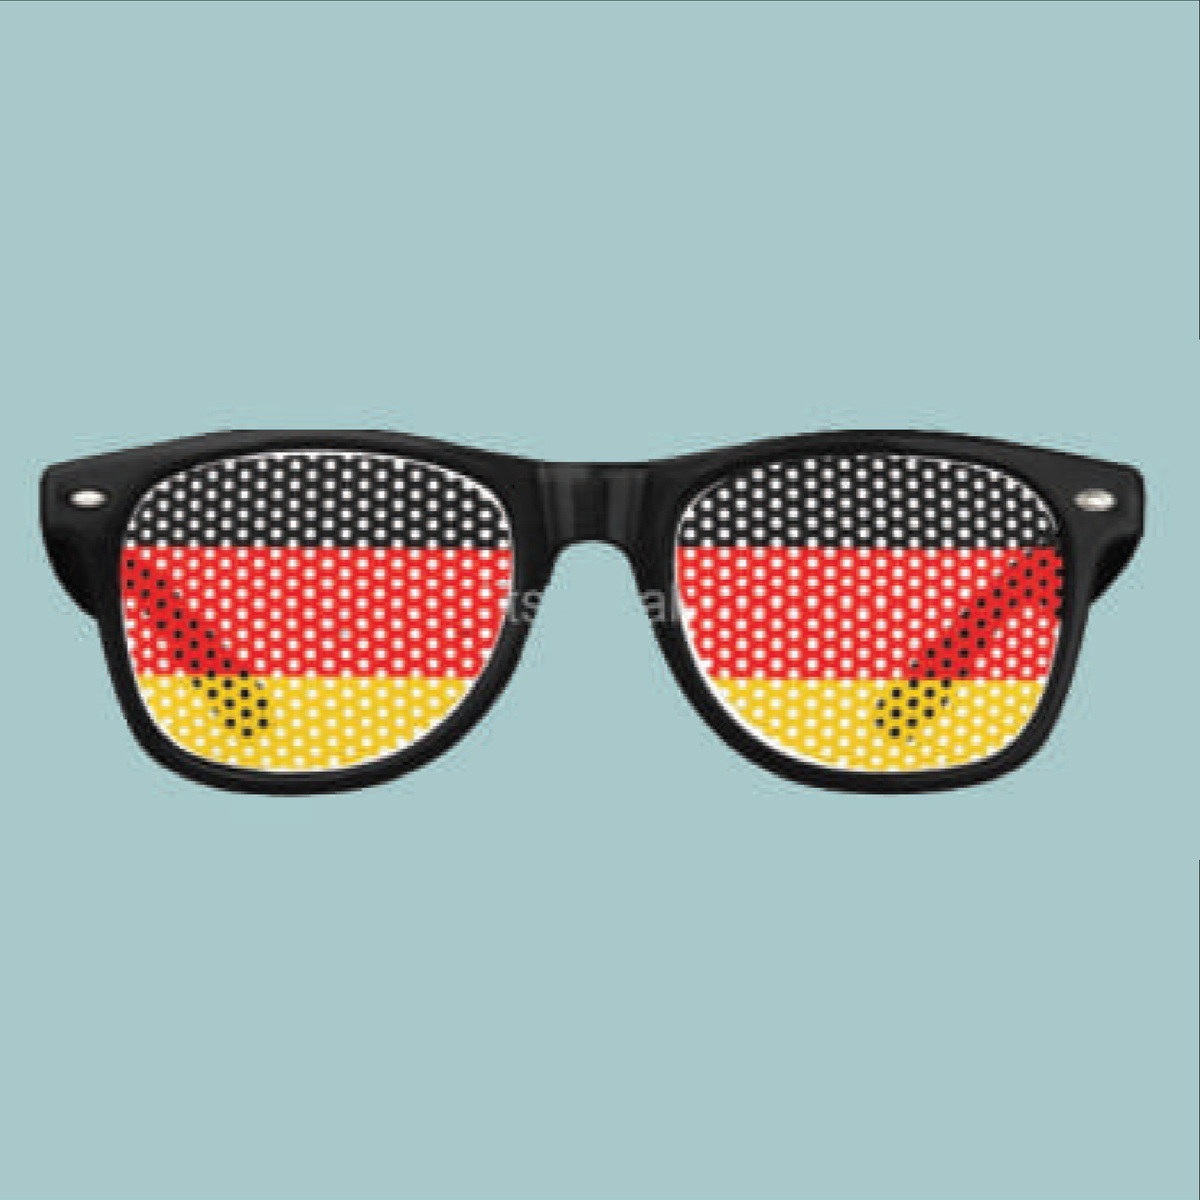 فيفا صندوق مشجعين ألمانيا لكأس العالم